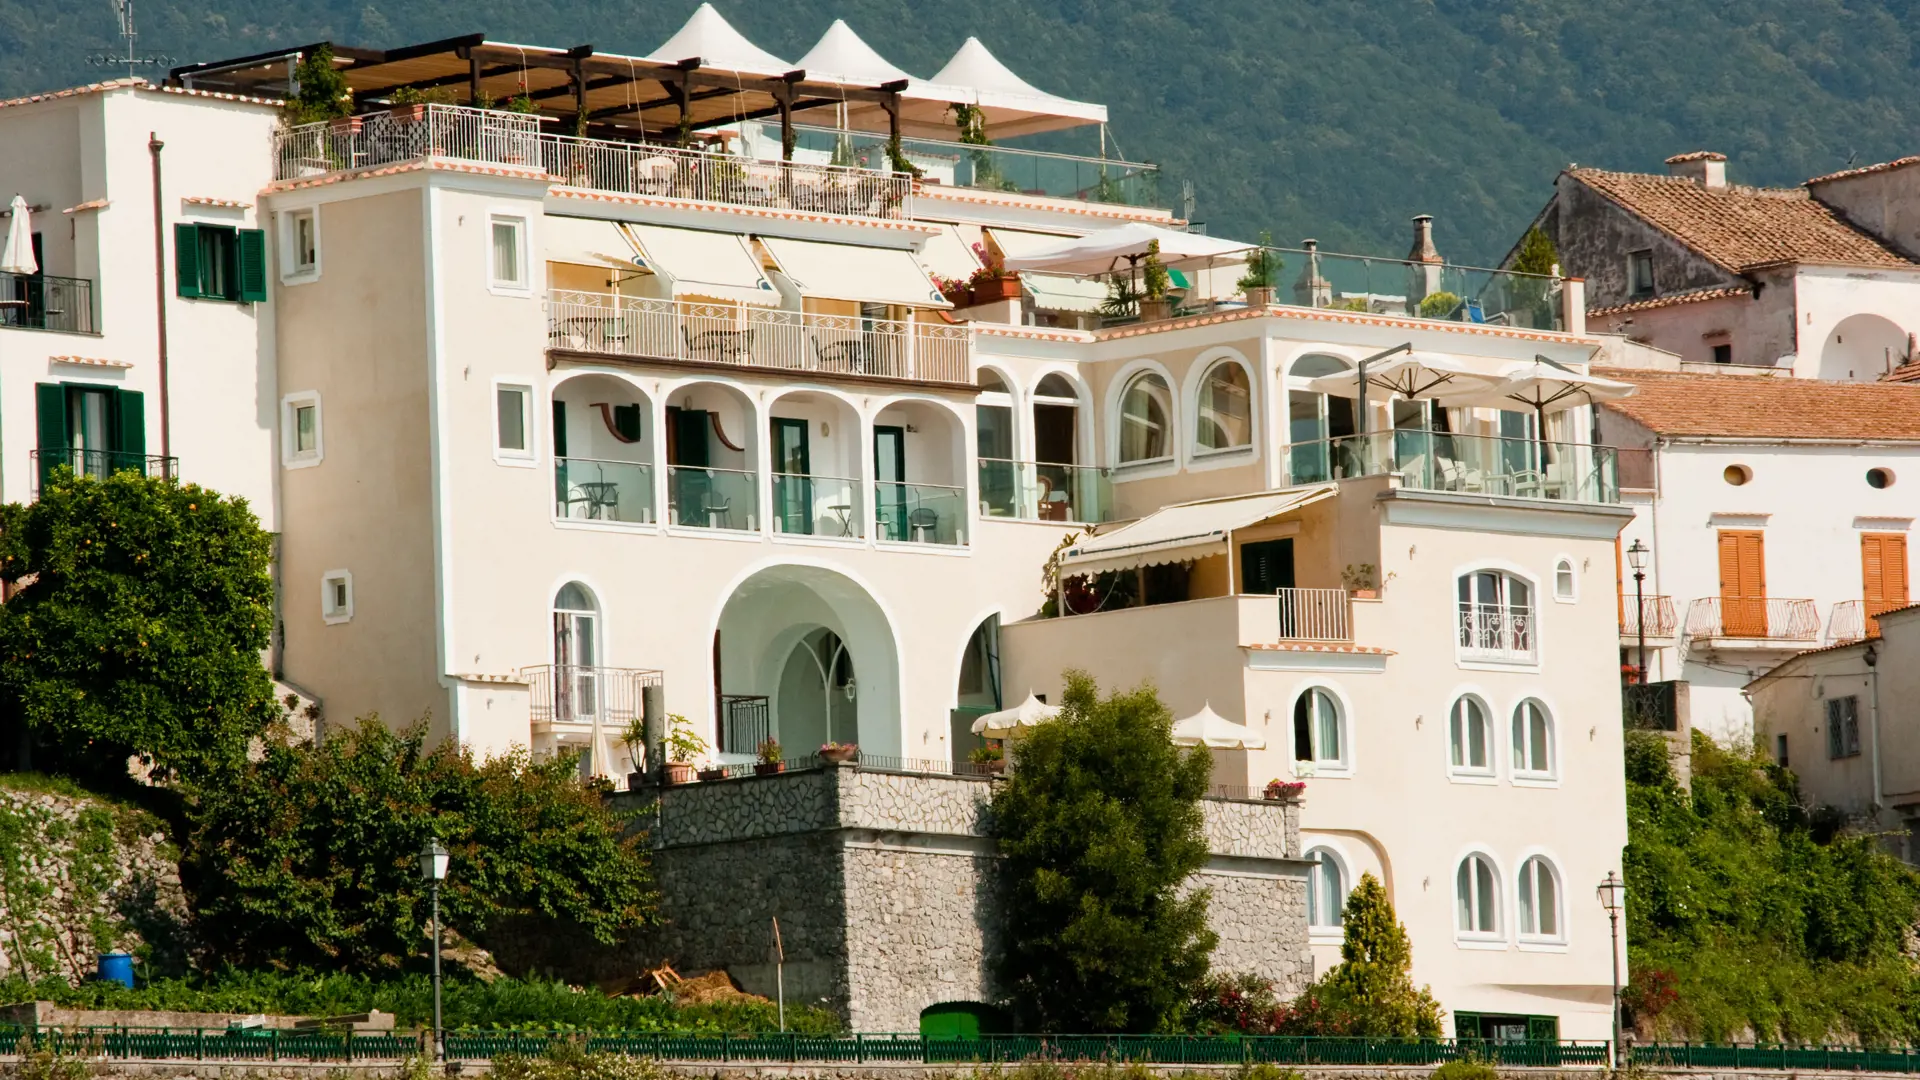 Hotel Bonadies ligger i en skråning i Ravello med en unik utsikt